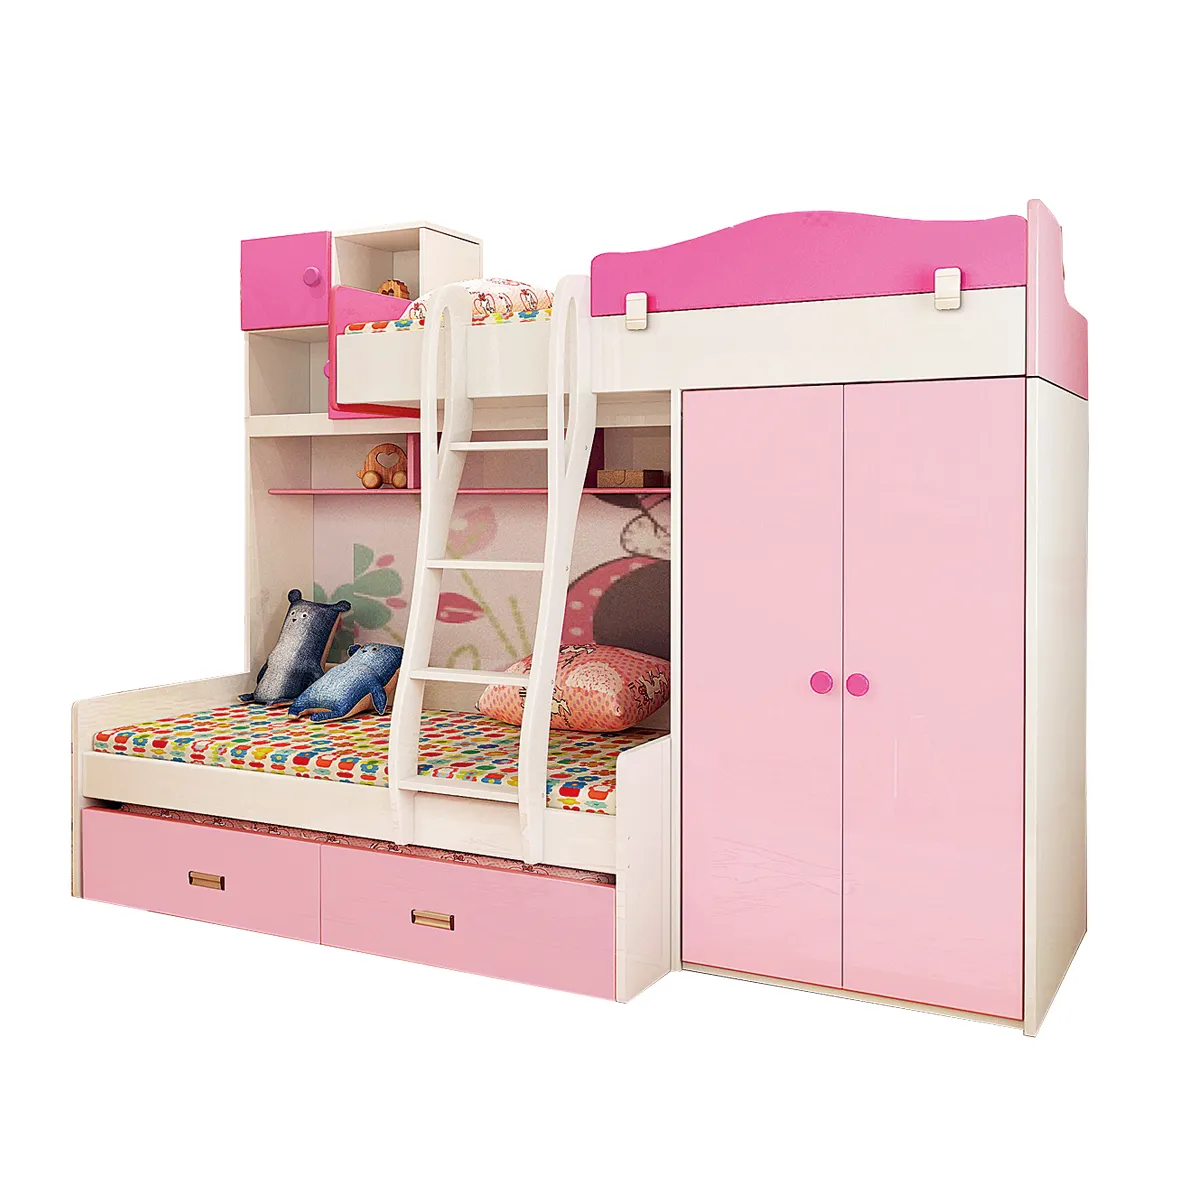 Muebles de dormitorio de princesa para niños, litera de madera de melamina con funciones variadas, color rosa